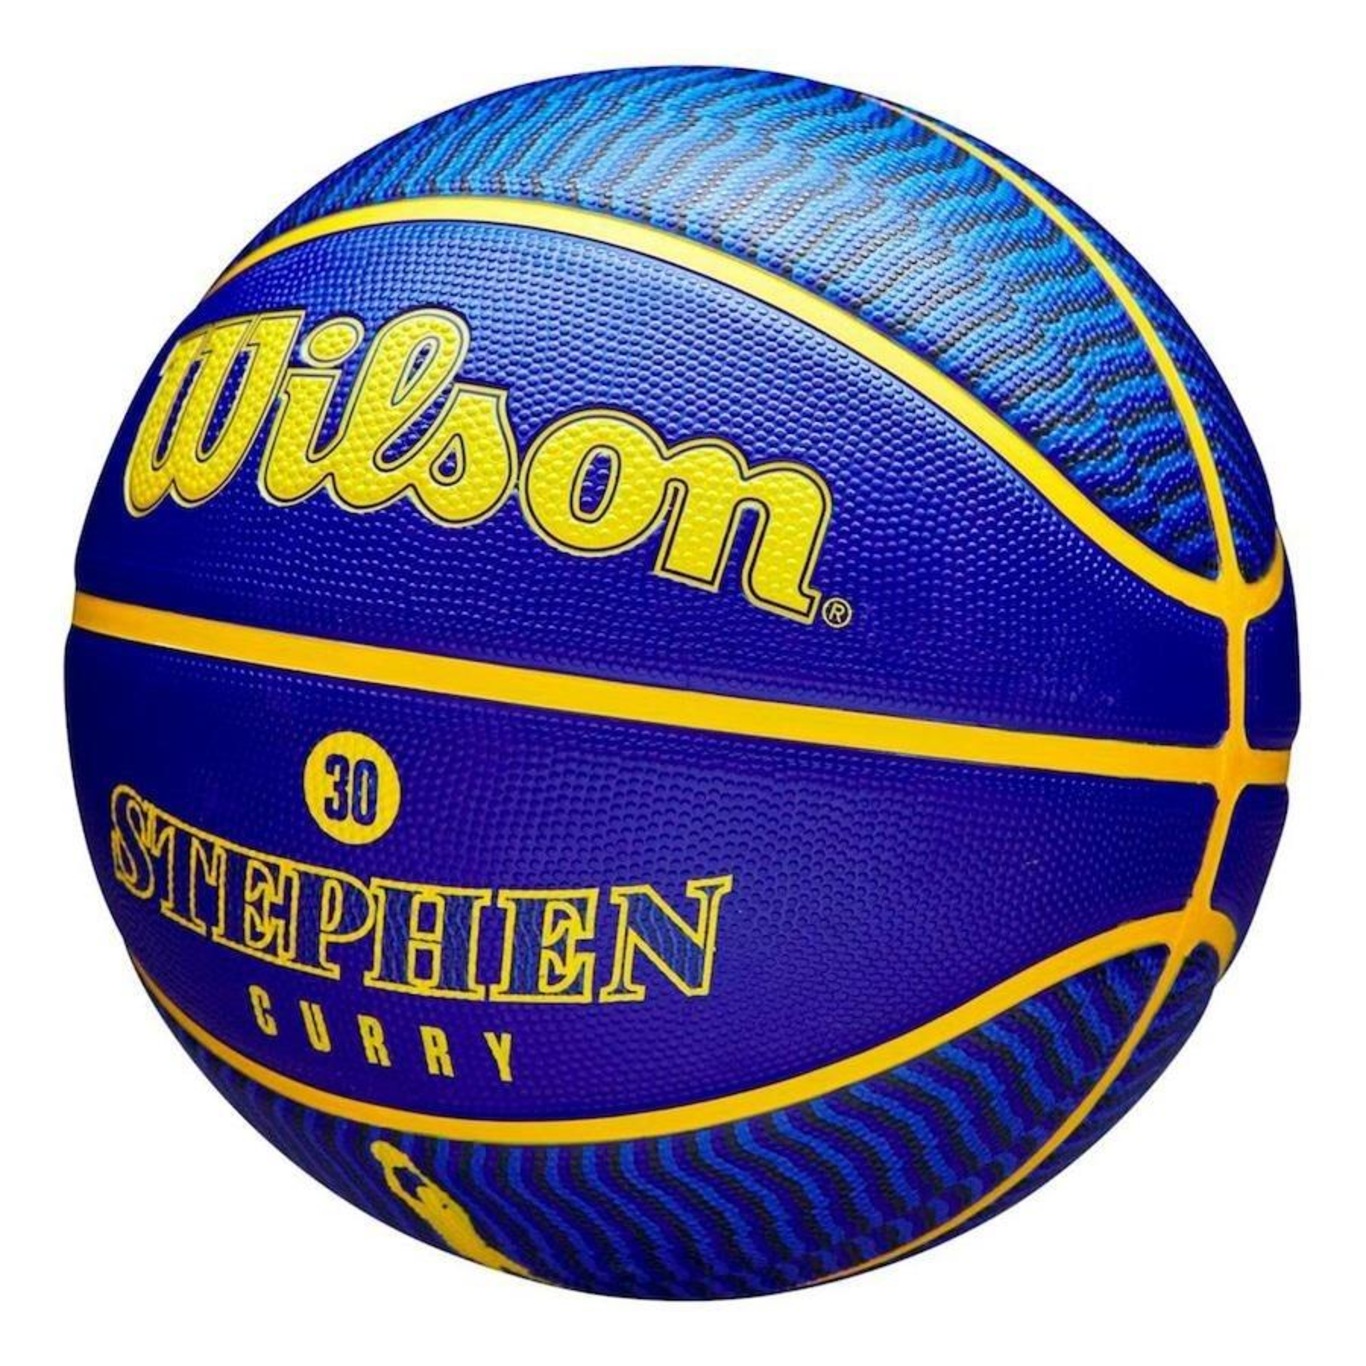 Bola de Basquete Wilson NBA Player Icon Outdoor Lebron Size 7